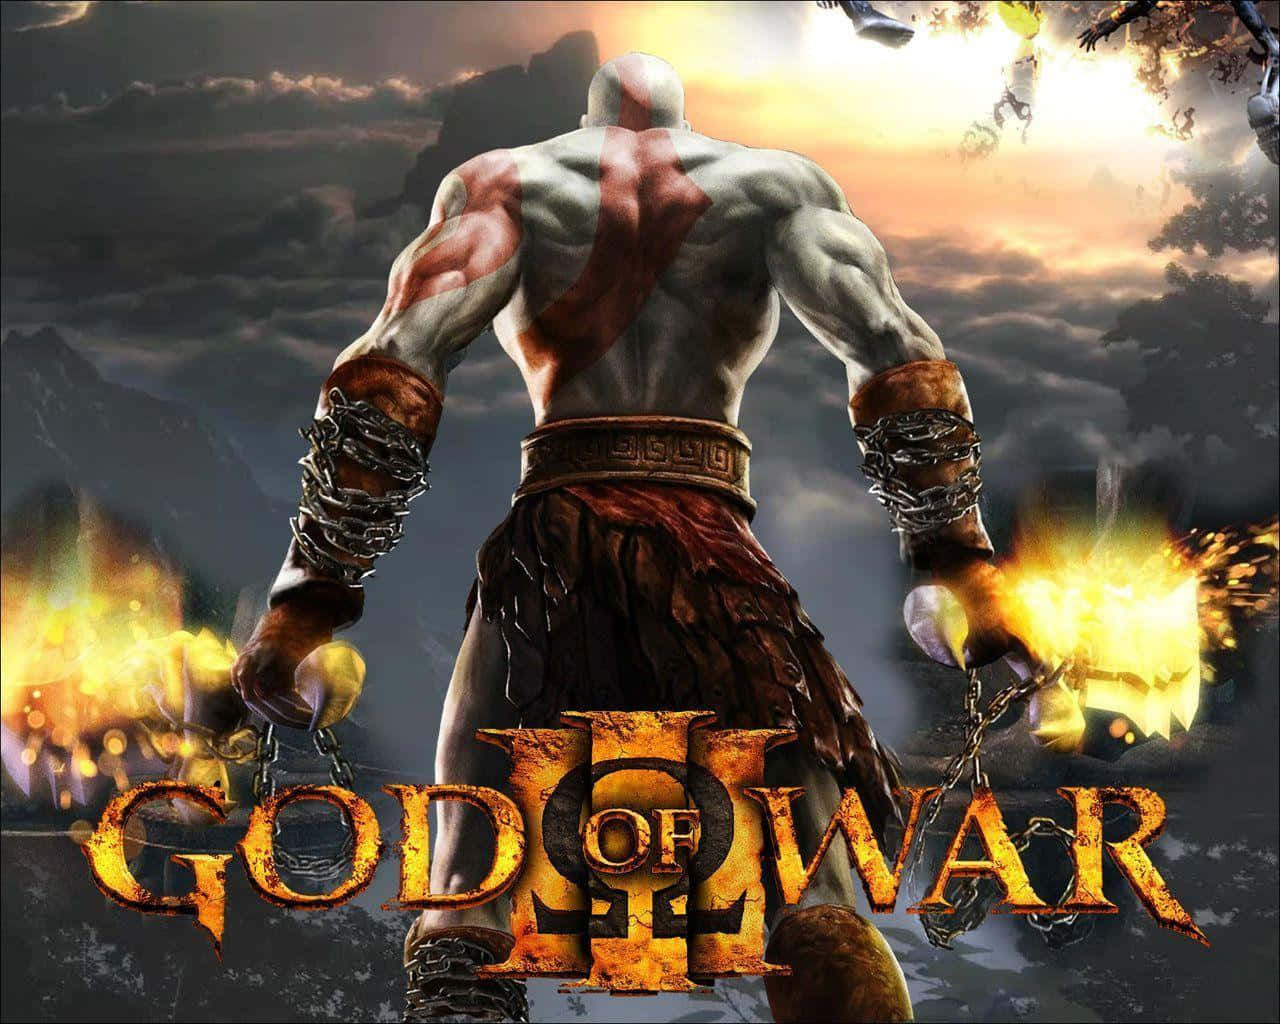 Kratos i al hans vrede, venter på en episk kamp i God of War 3. Wallpaper